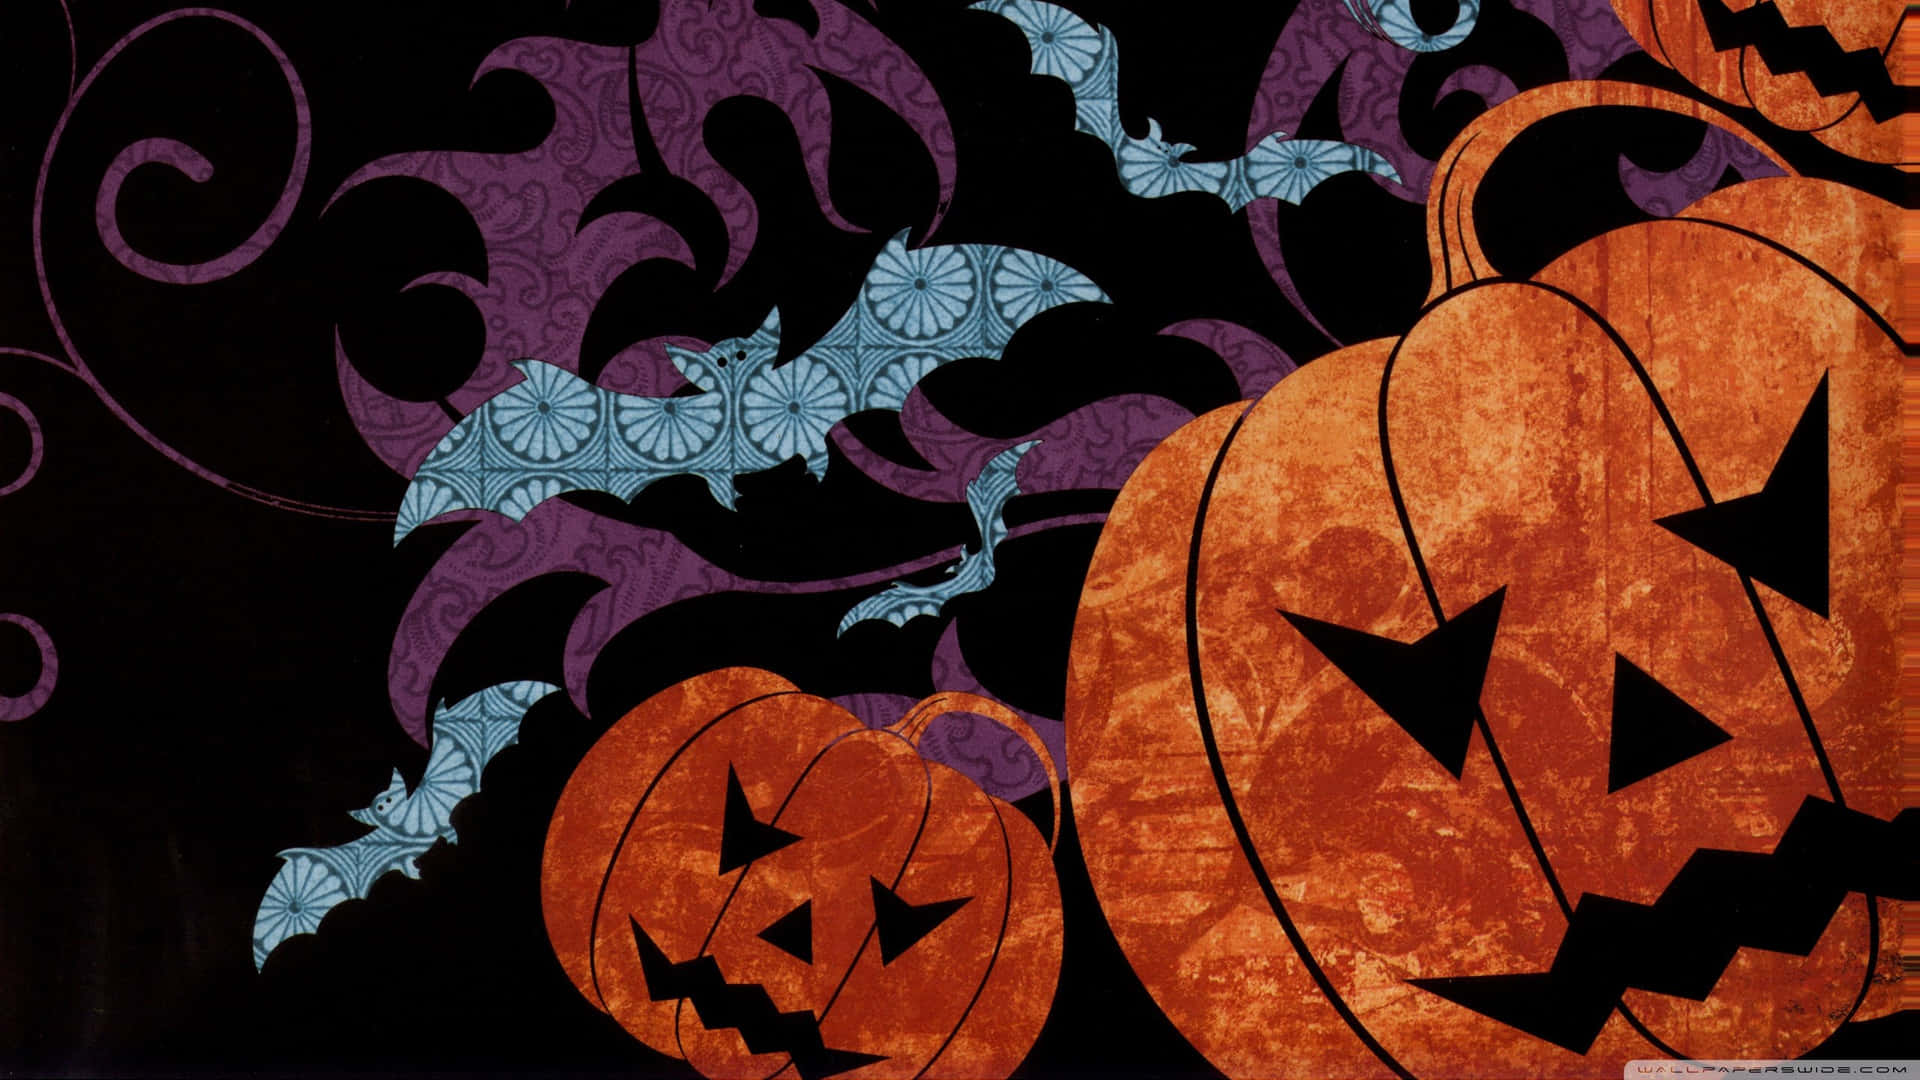 Download Halloween Wallpapers - Hd Wallpapers | Wallpapers.com